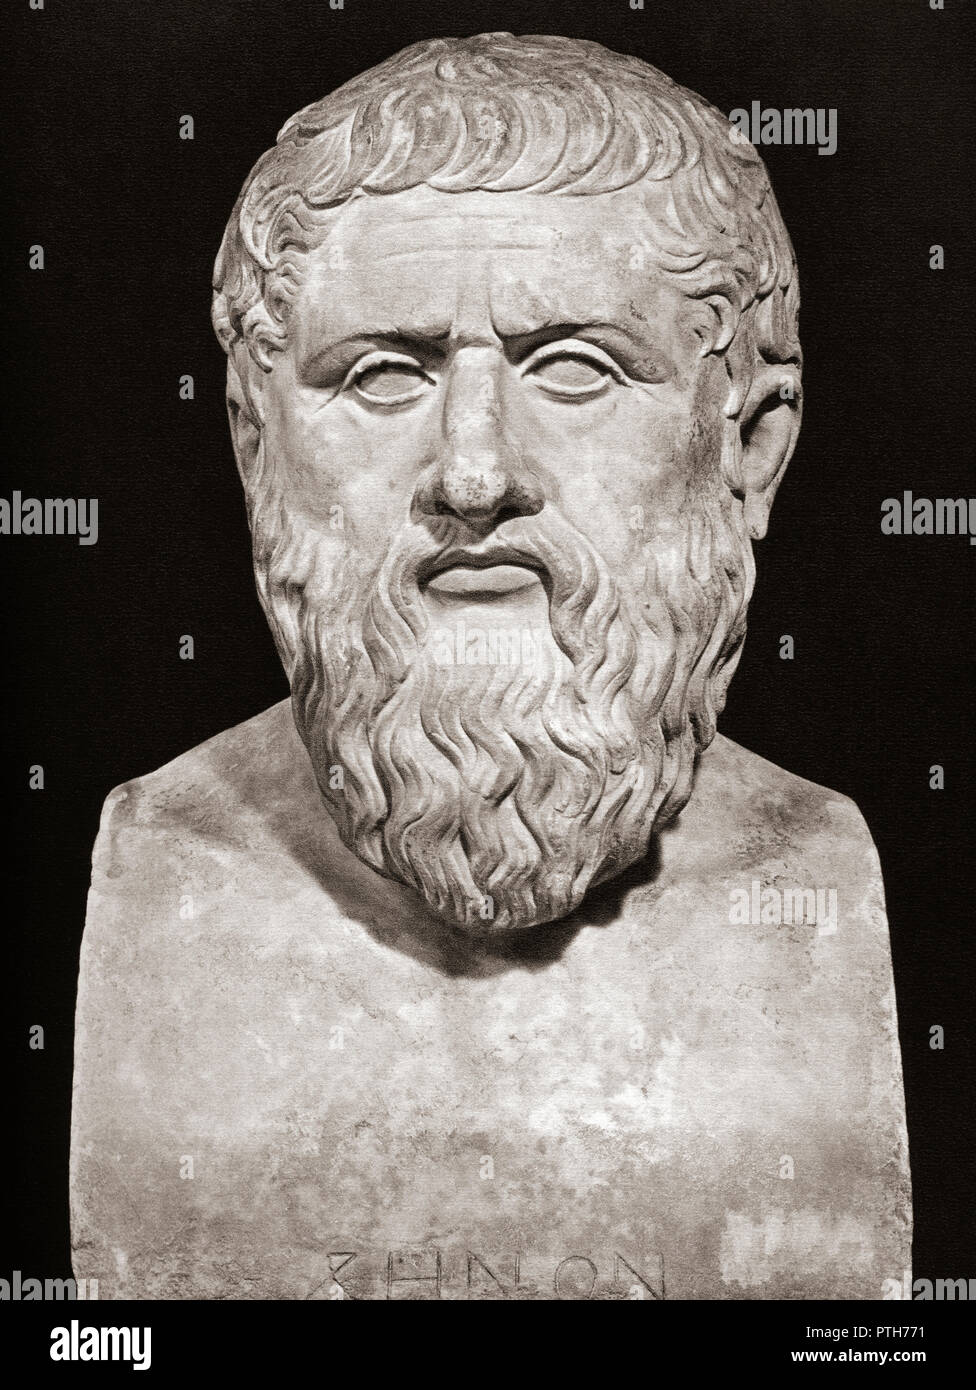 Busto di Platone, 428/427 o 424/423 - 348/347 BC. Antico filosofo greco e il fondatore della Accademia di Atene. Foto Stock